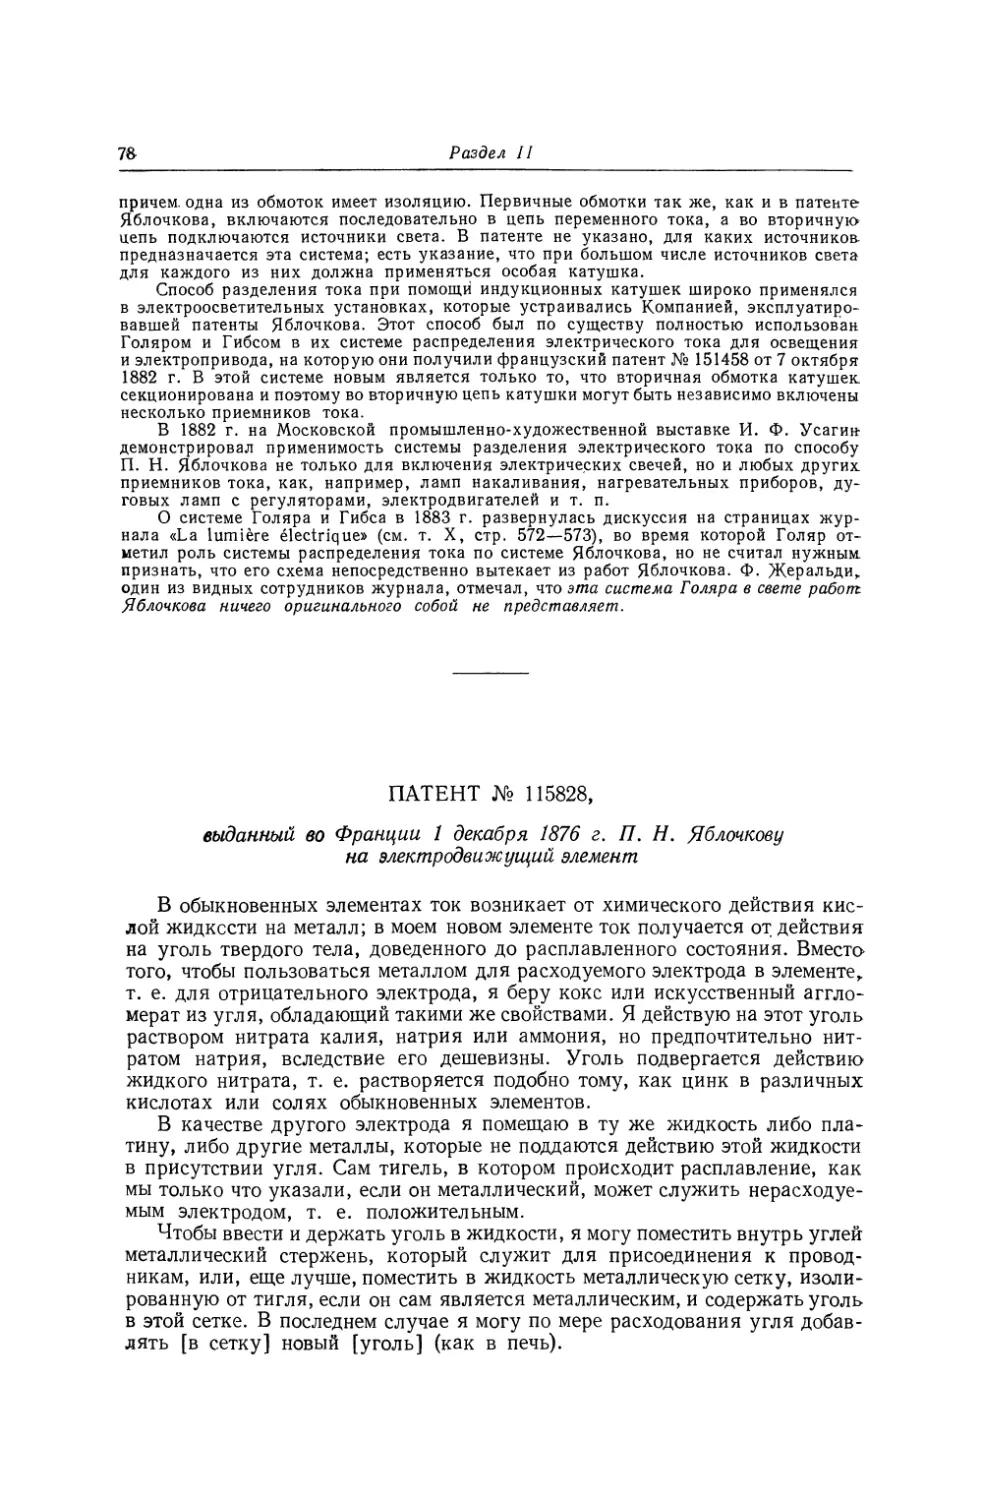 Патент № 115828, выданный во Франции 1 декабря 1876 г. П. Н. Яблочкову на электродвижущий элемент